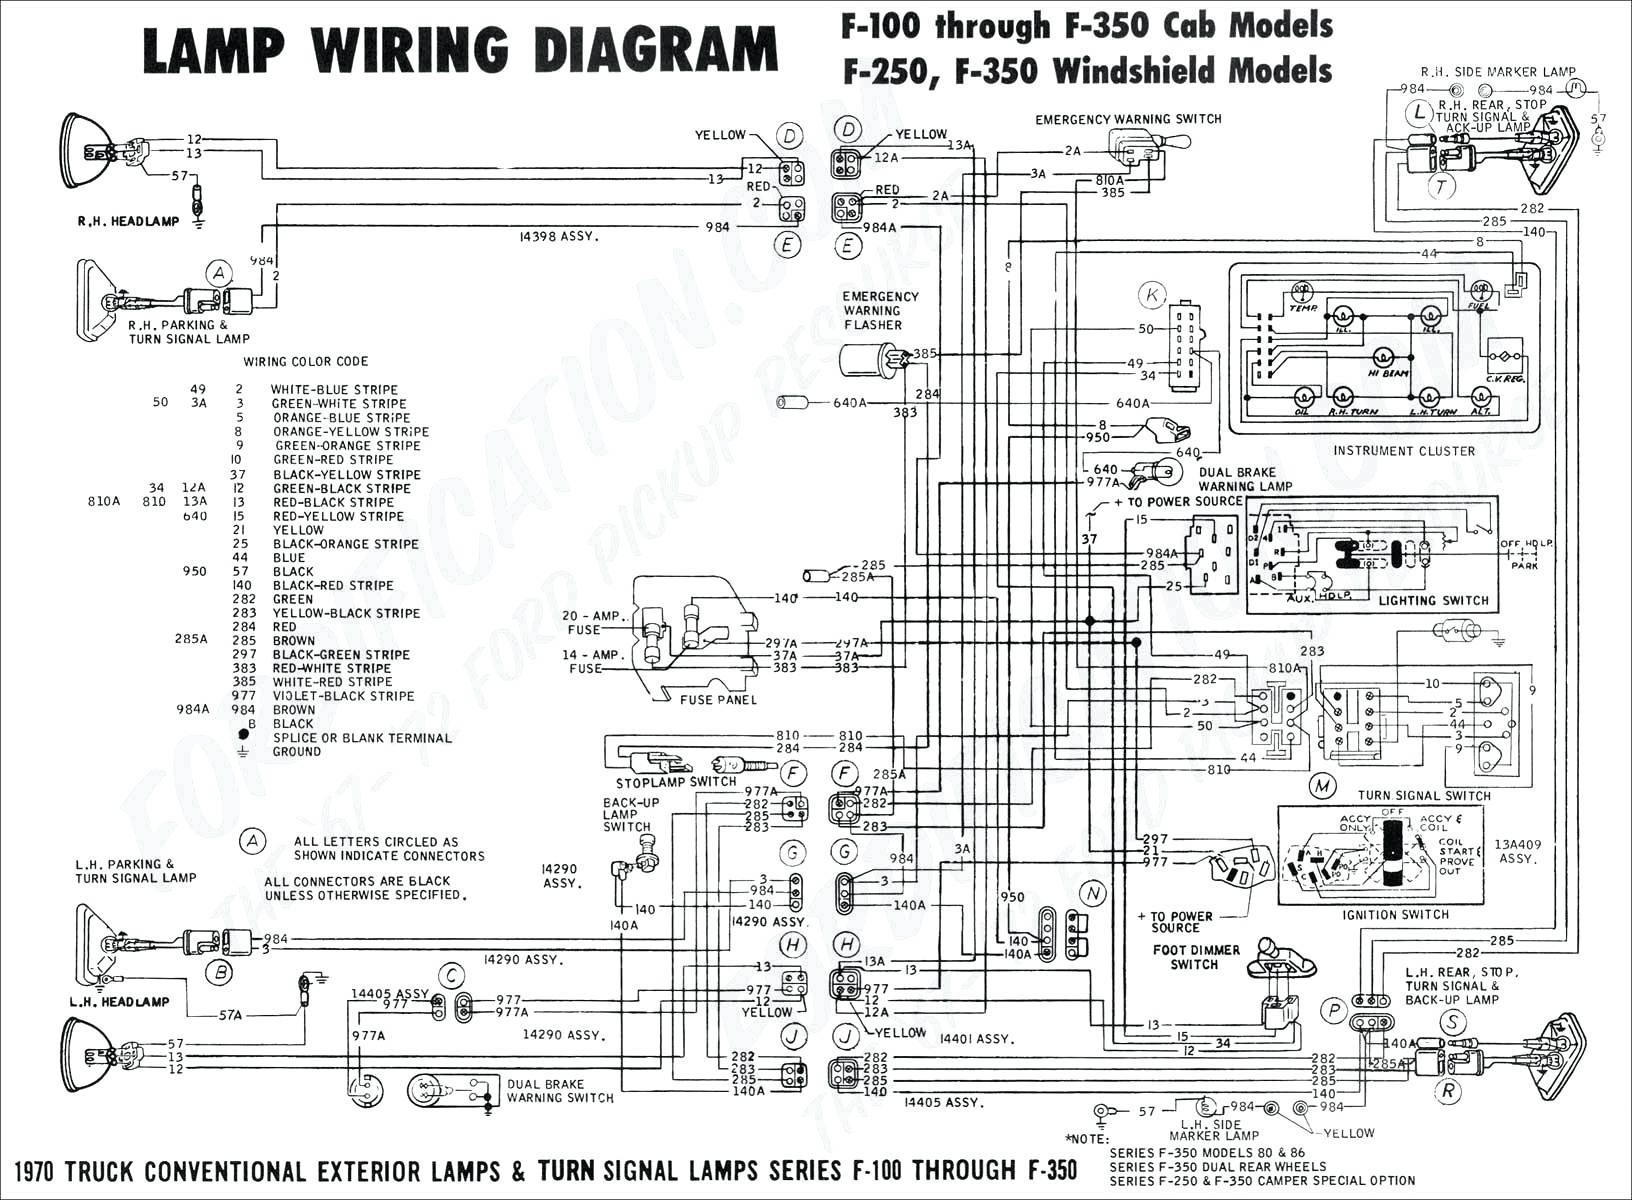 Car Audio Setup Diagram Wiring Diagram In Car Wiring Diagram Inside Of Car Audio Setup Diagram